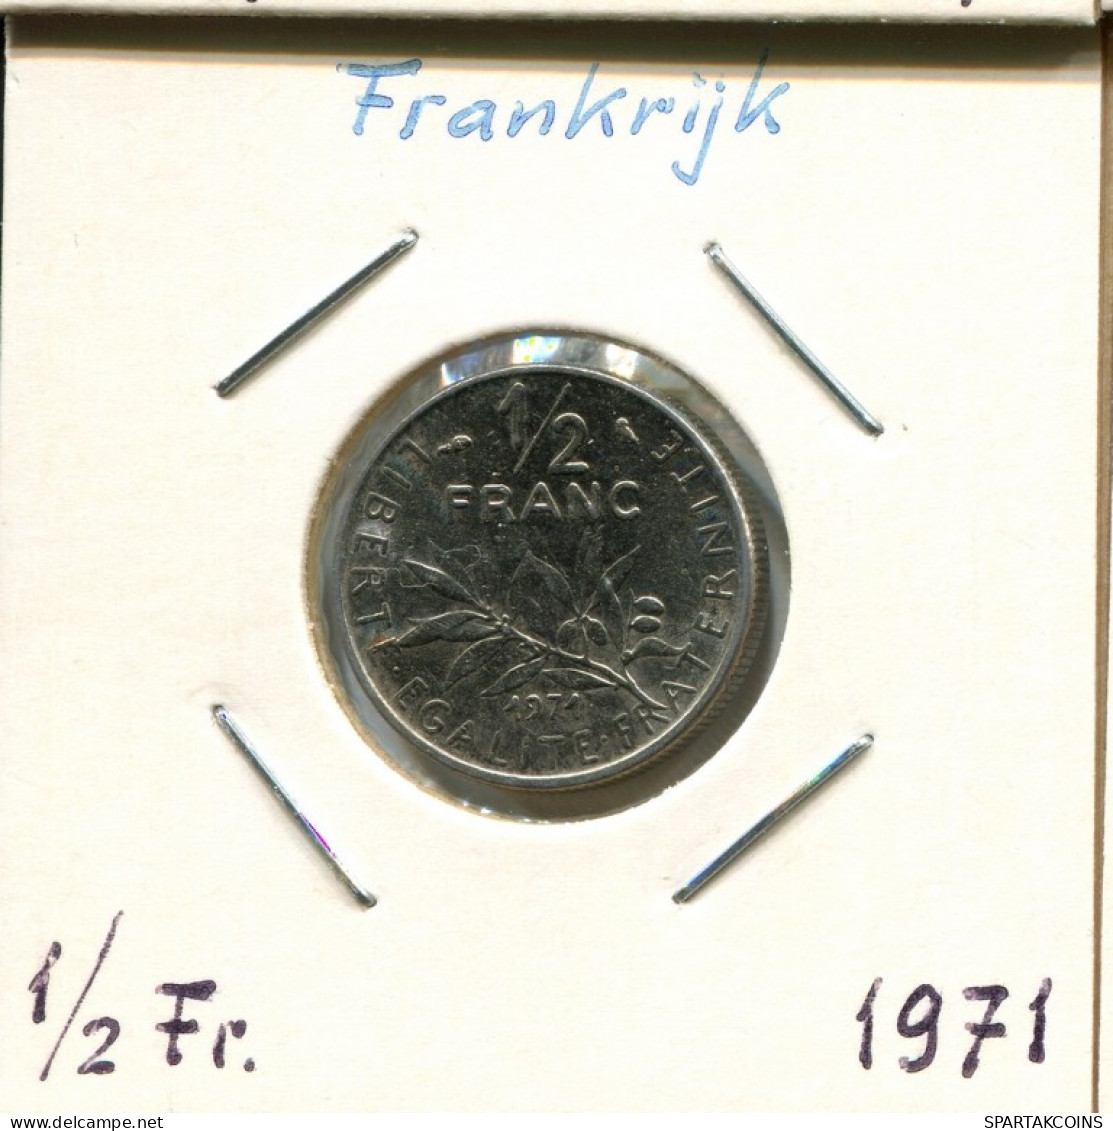 1/2 FRANC 1971 FRANCIA FRANCE Moneda #AM243.E.A - 1/2 Franc